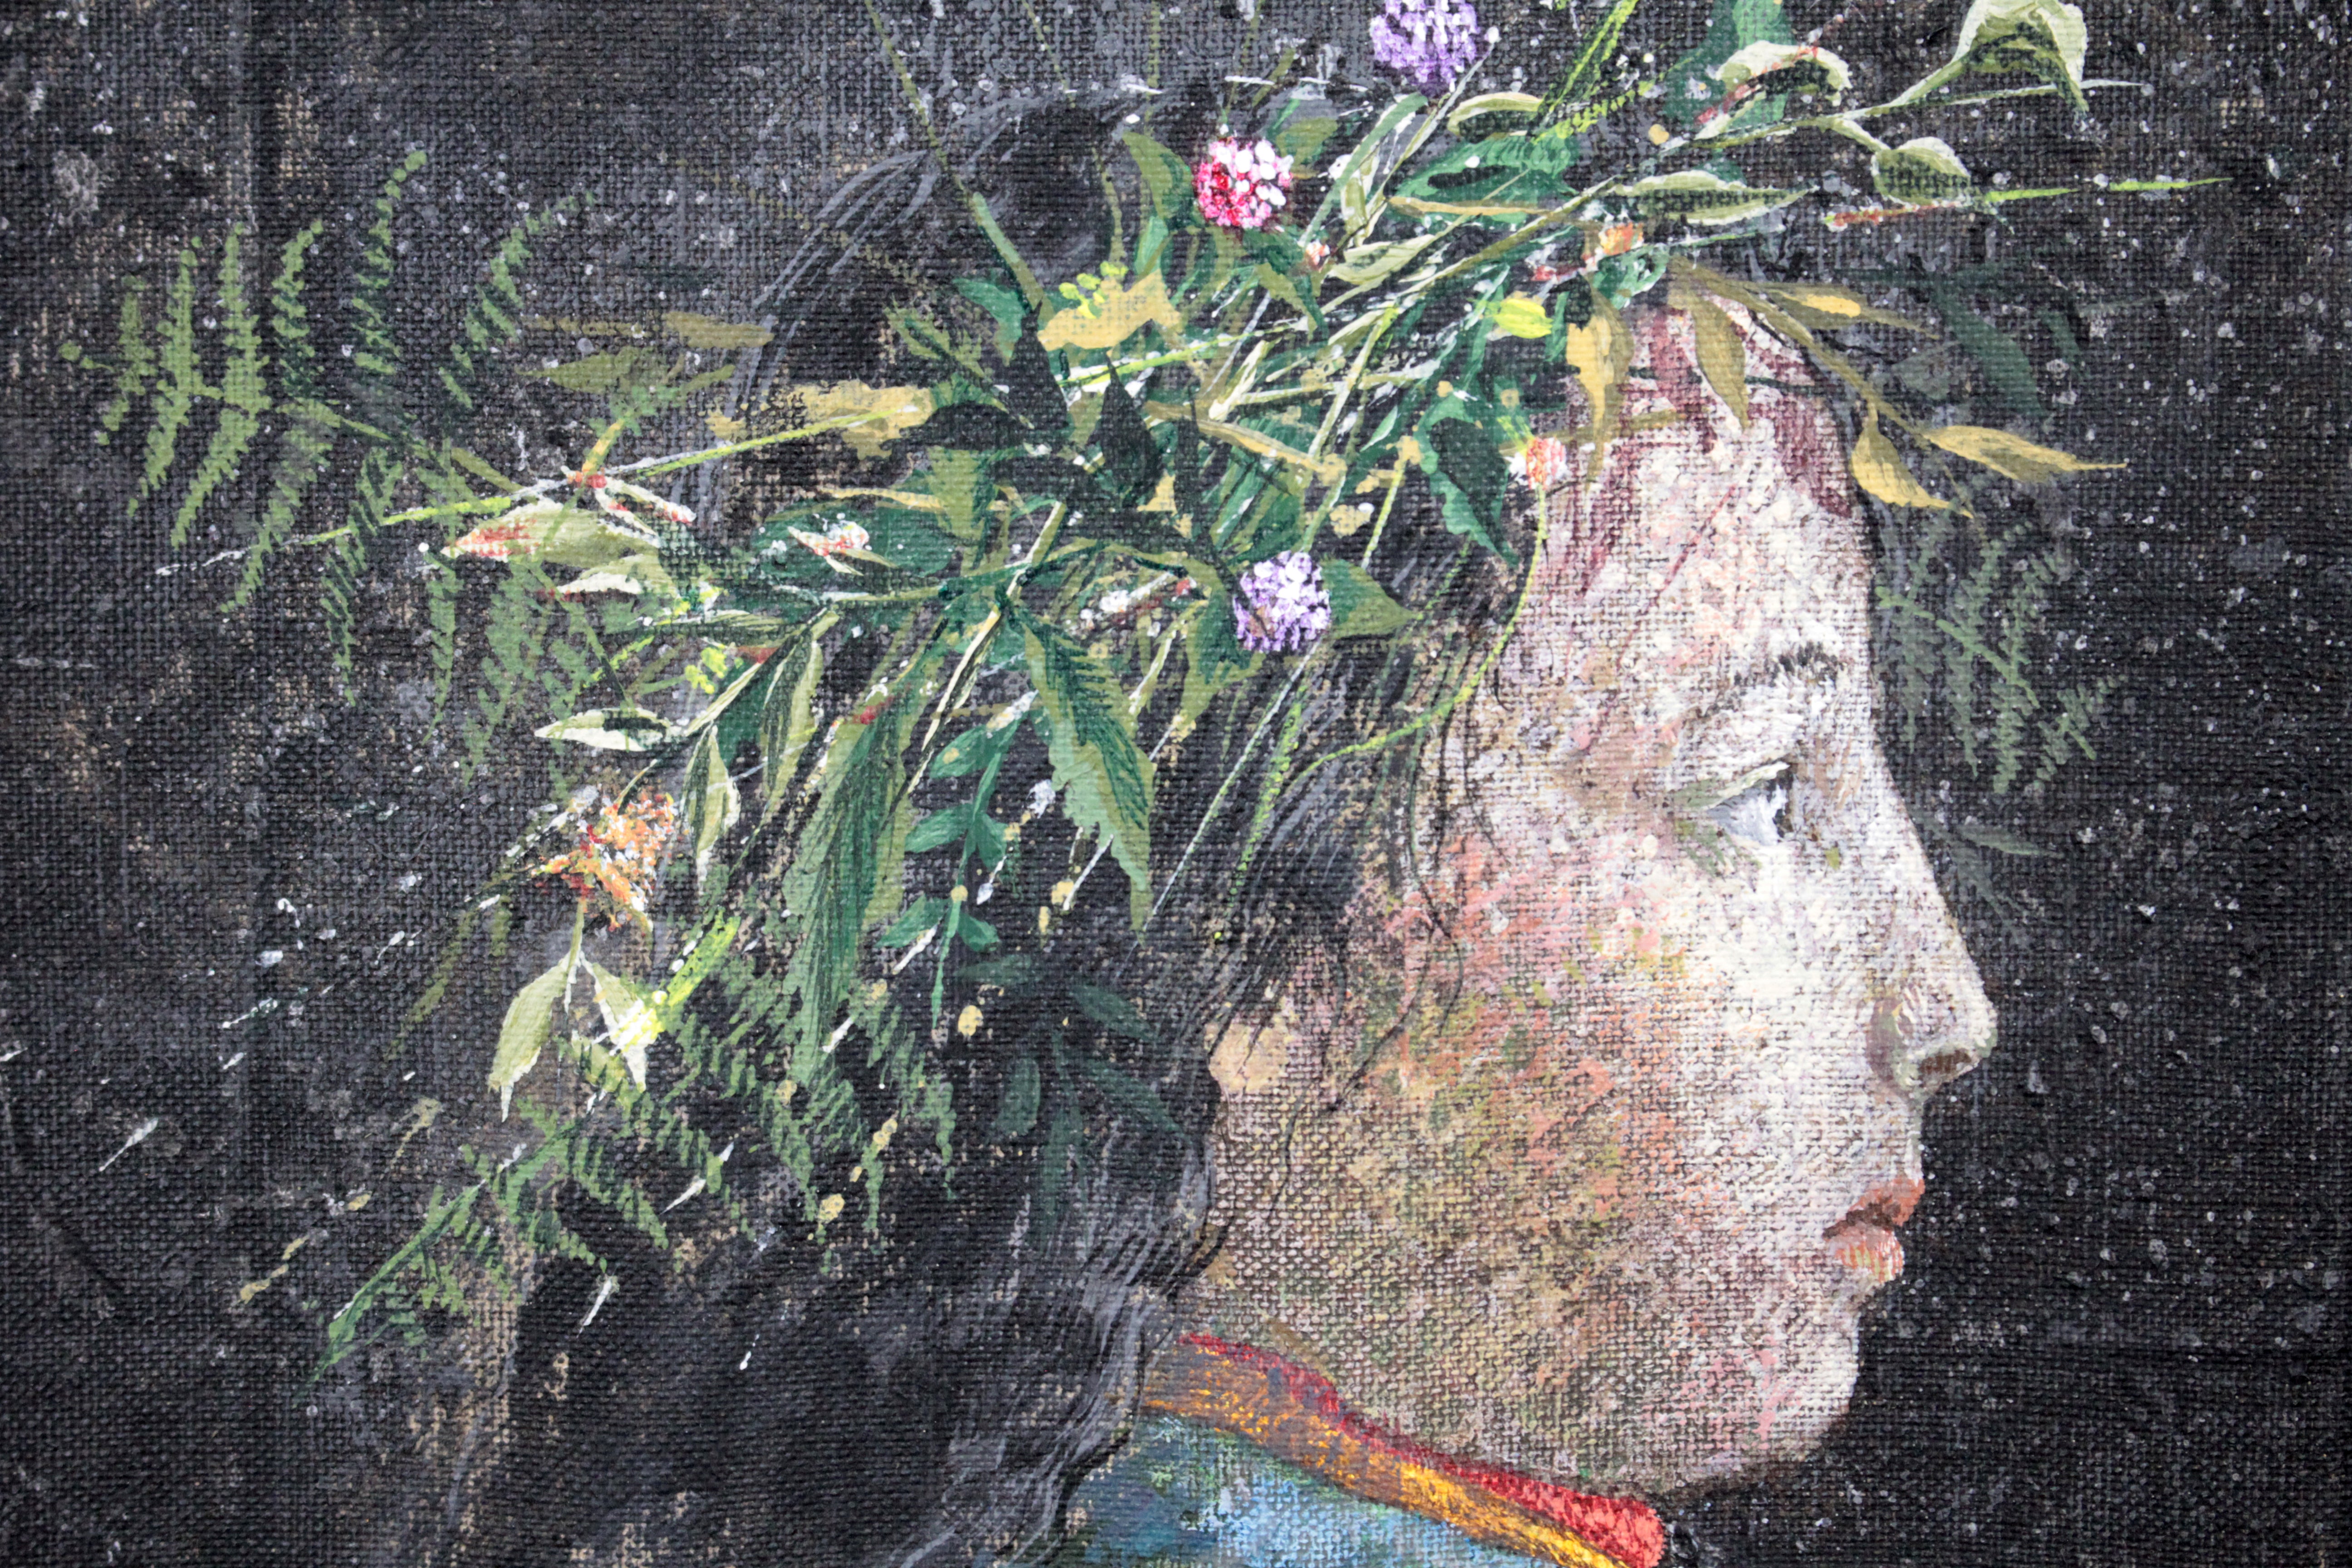 輪島進一 『少女』 油彩画 - 北海道画廊